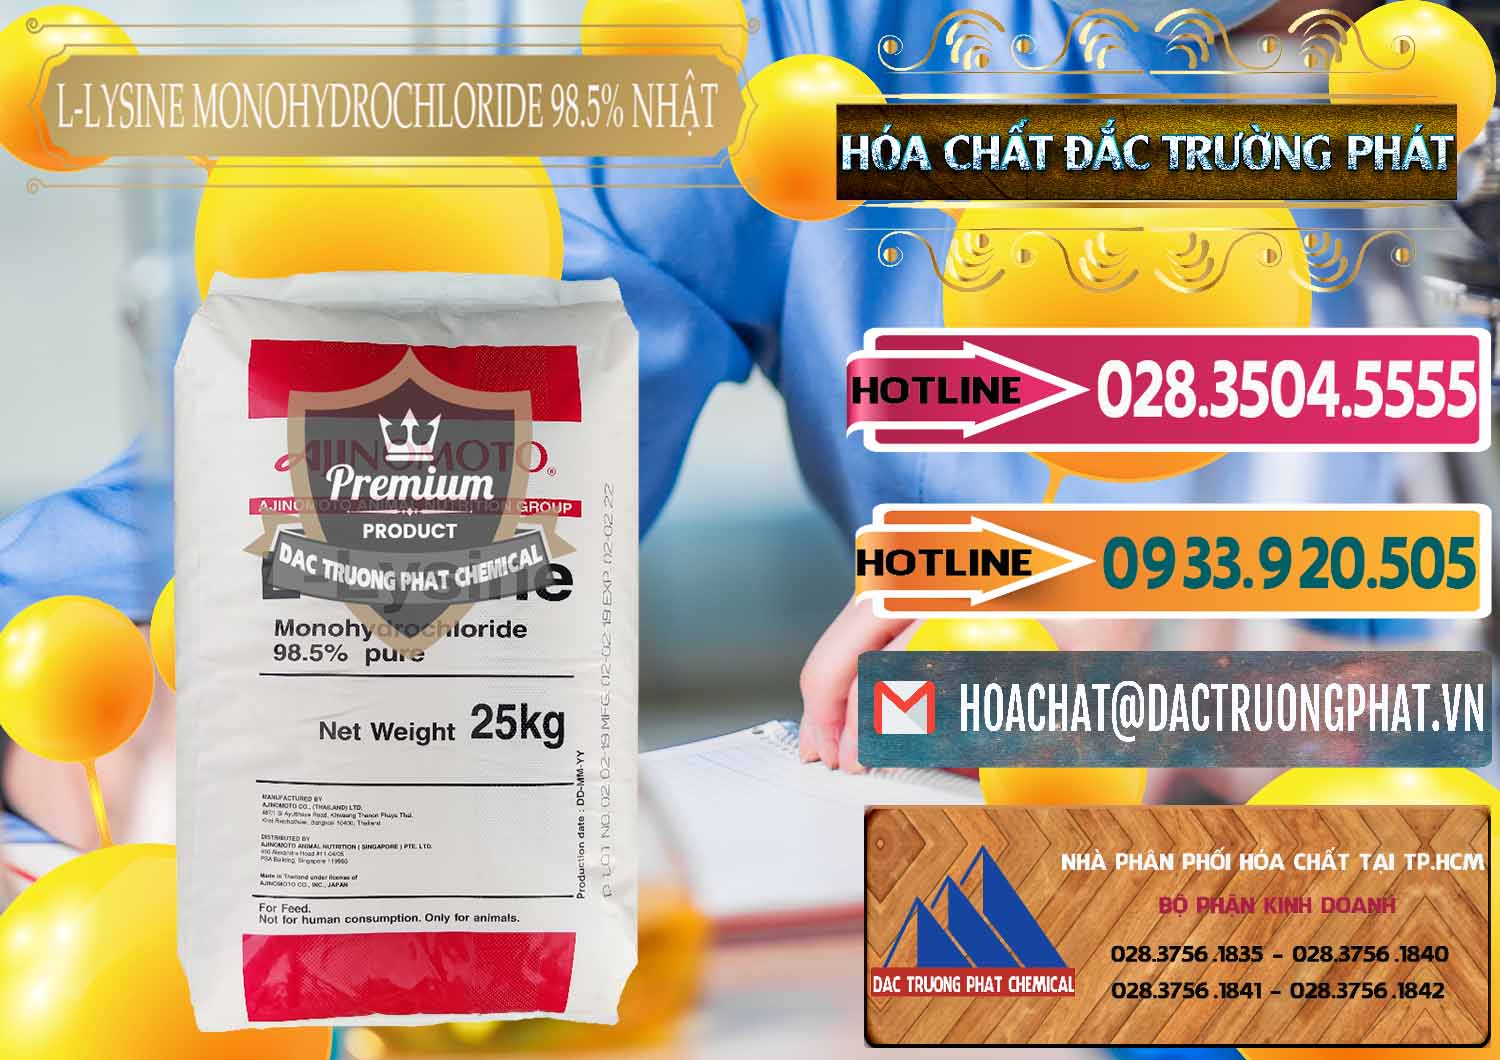 Cty chuyên bán & phân phối L-Lysine Monohydrochloride Feed Grade Ajinomoto Nhật Bản Japan - 0315 - Nơi cung cấp ( phân phối ) hóa chất tại TP.HCM - dactruongphat.vn